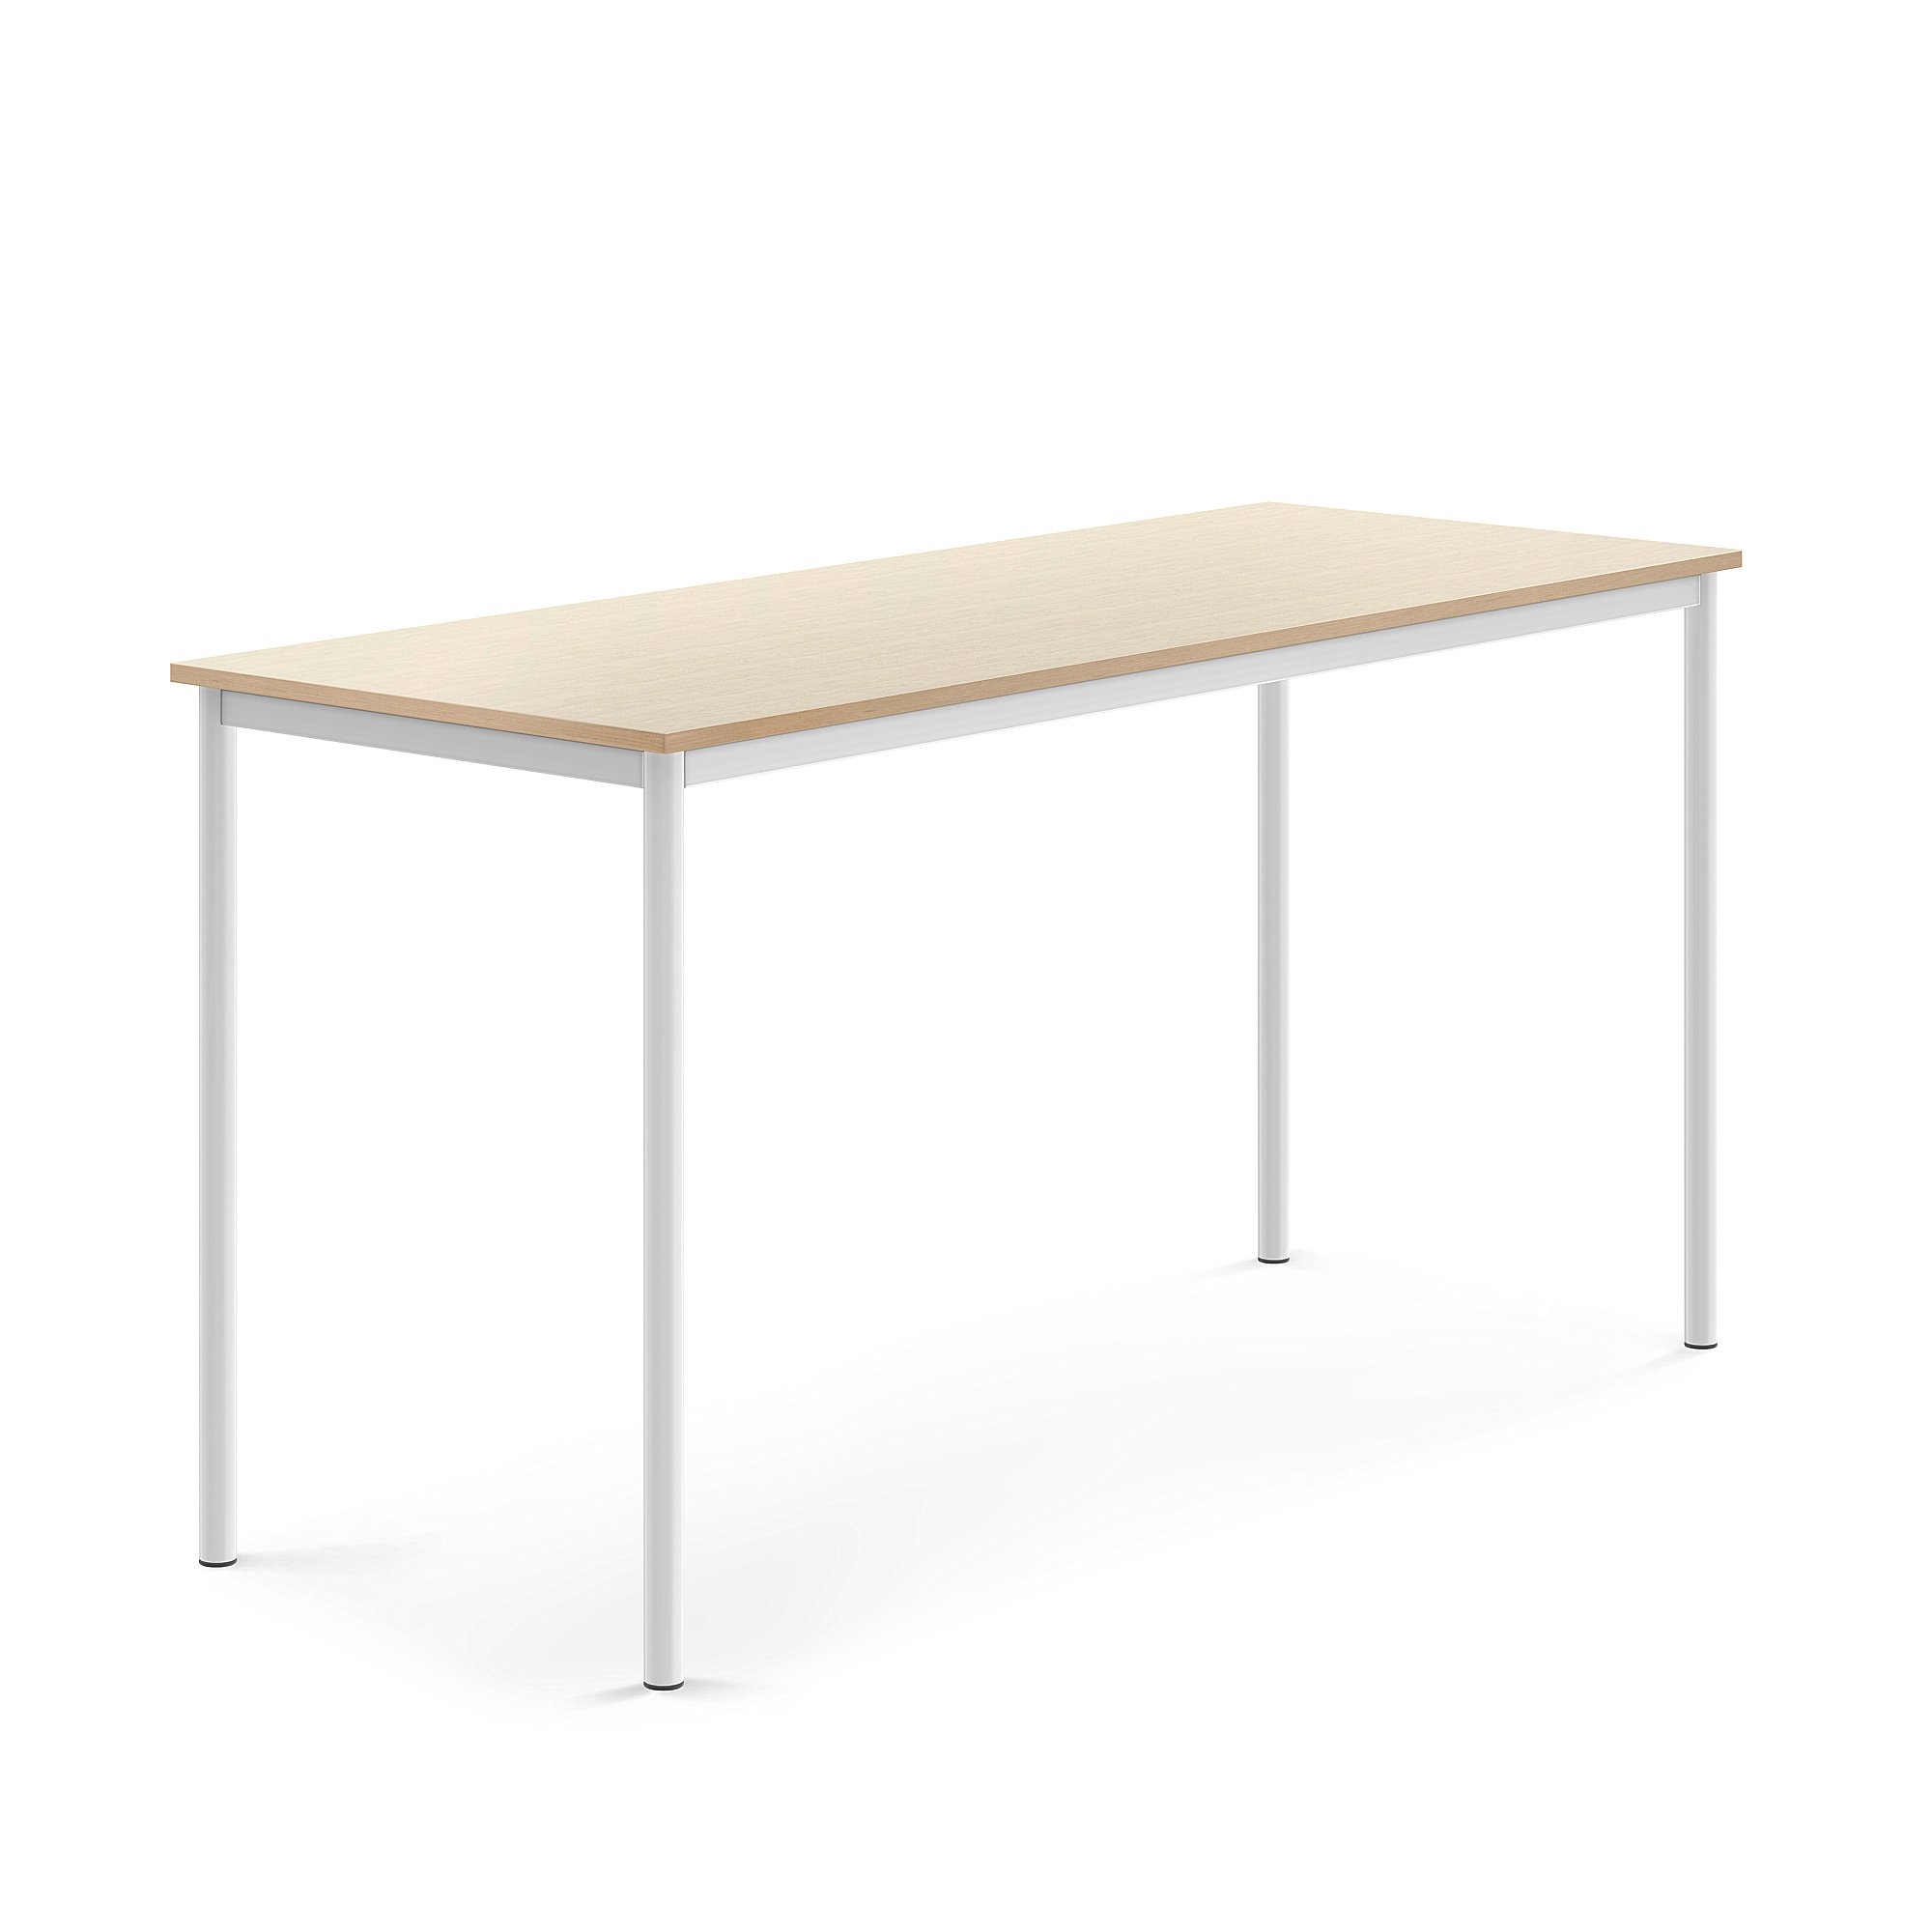 Stůl SONITUS, 1800x700x900 mm, bílé nohy, HPL deska tlumící hluk, bříza